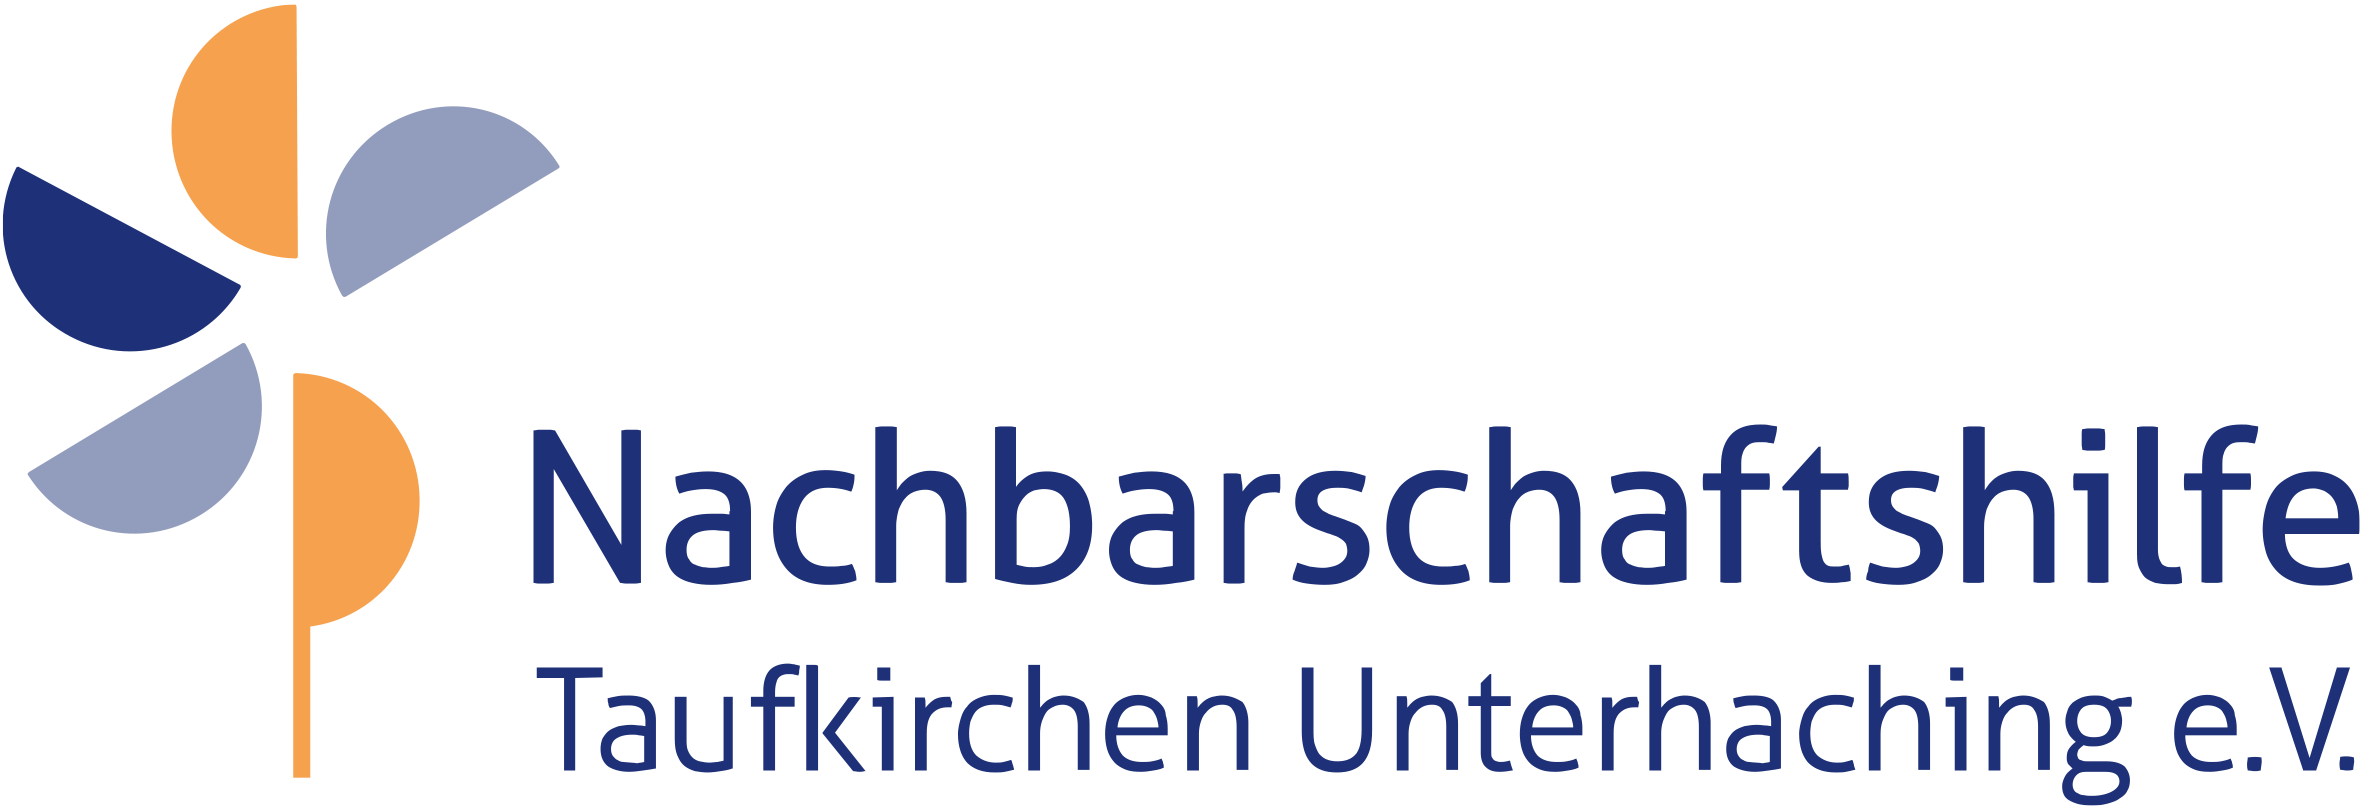 Nachbarschaftshilfe Taufkirchen Unterhaching - Corona-Nothilfefonds